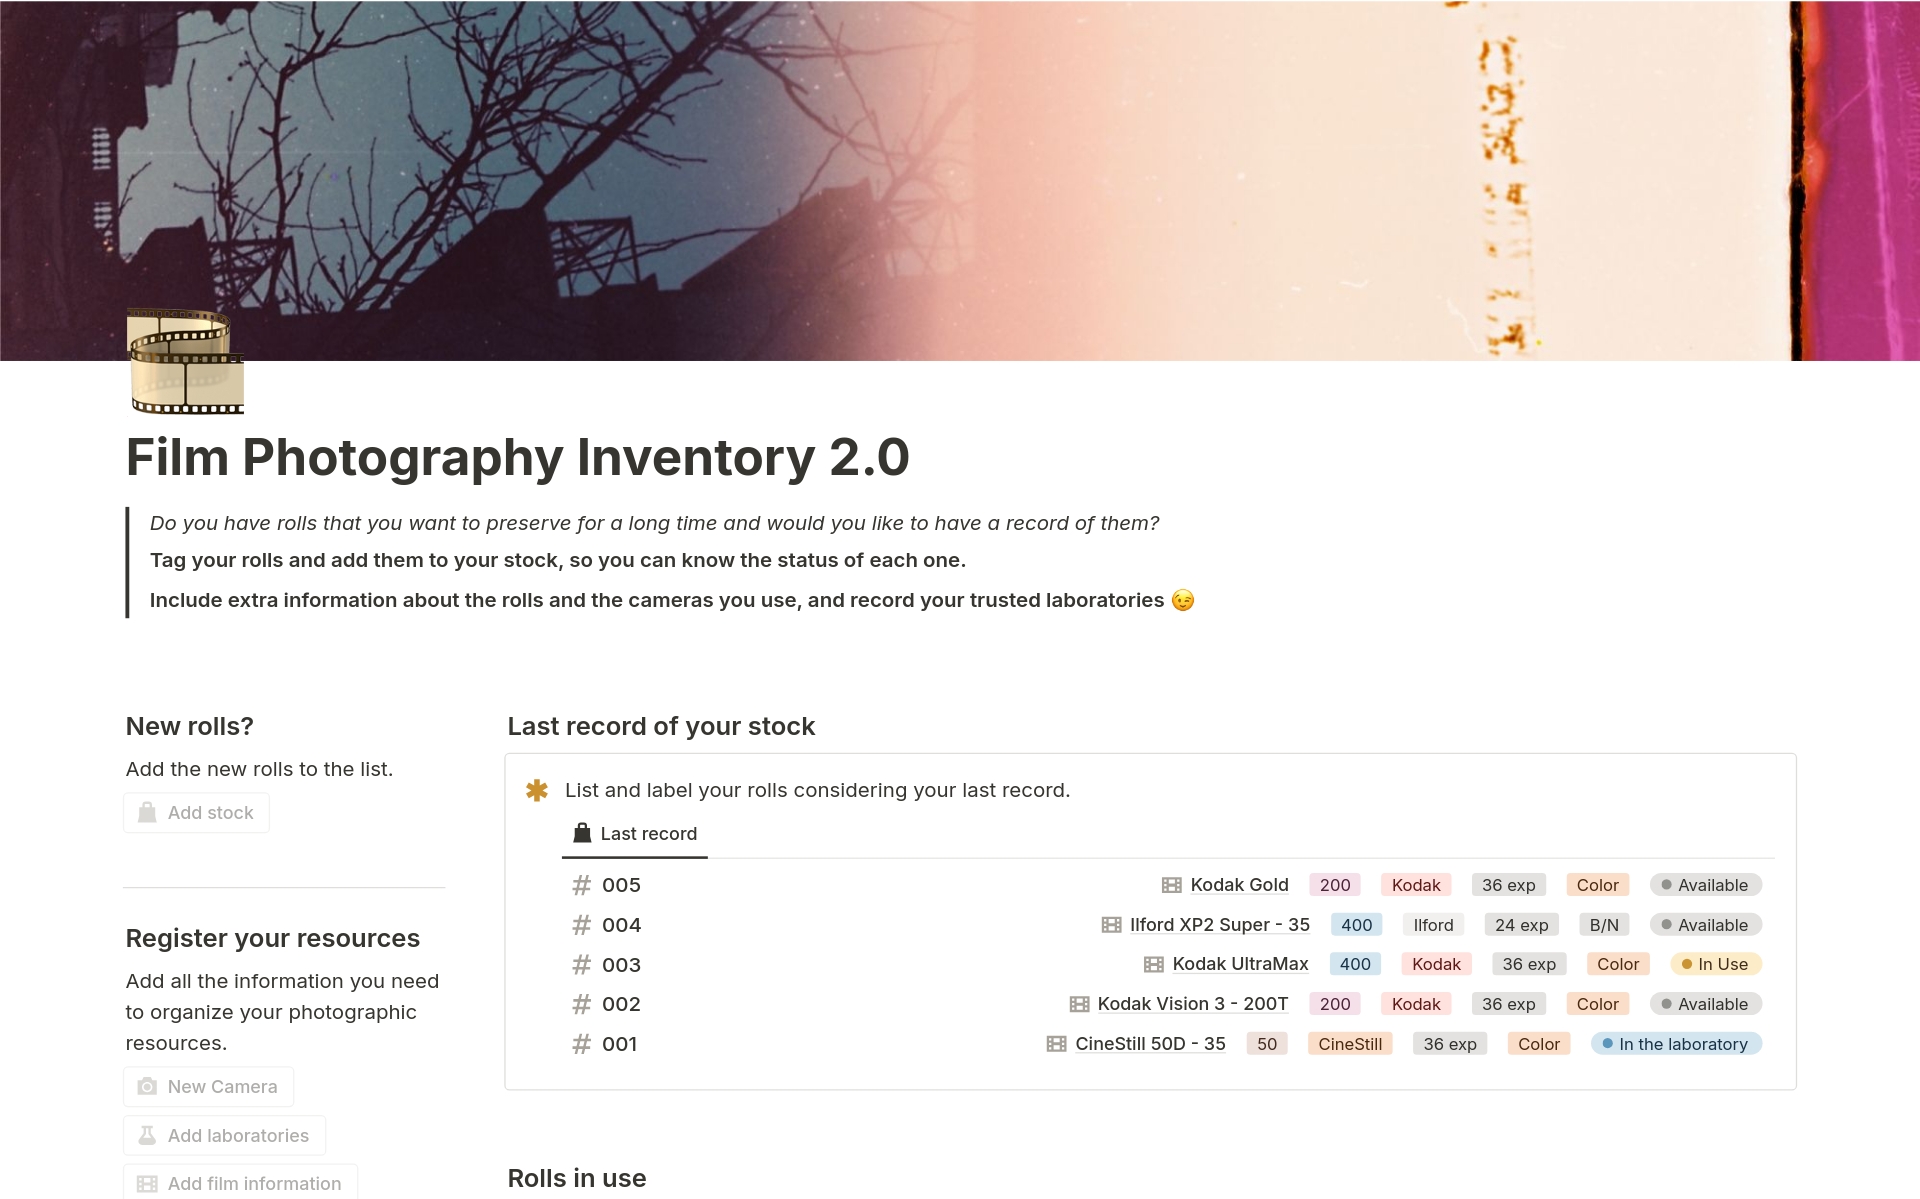 Film Photography Inventory 2.0님의 템플릿 미리보기